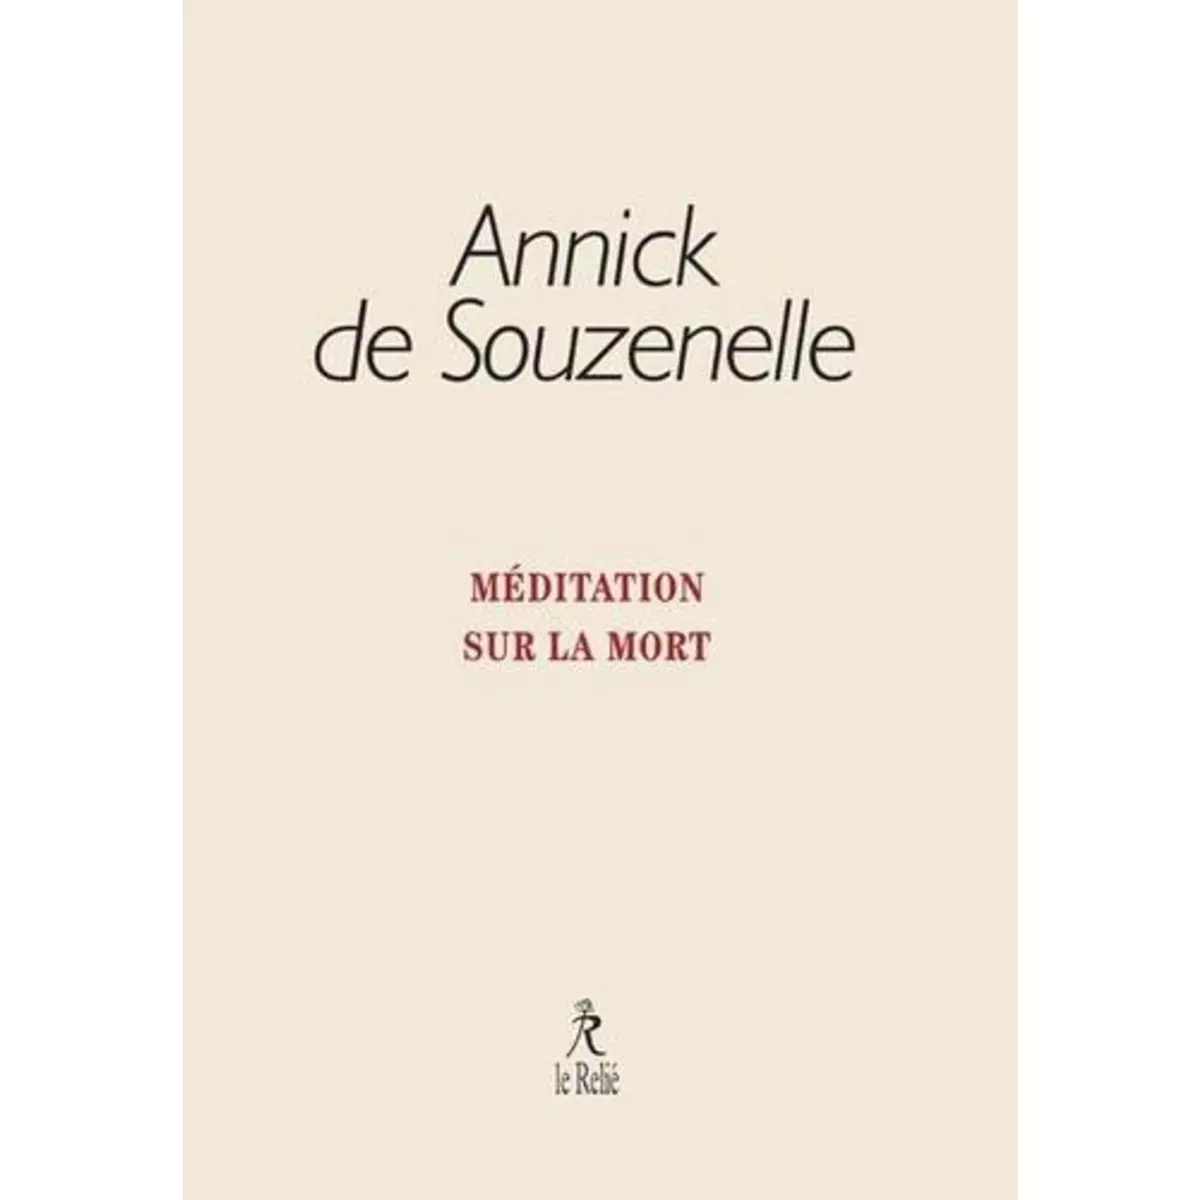  MEDITATION SUR LA MORT, Souzenelle Annick de